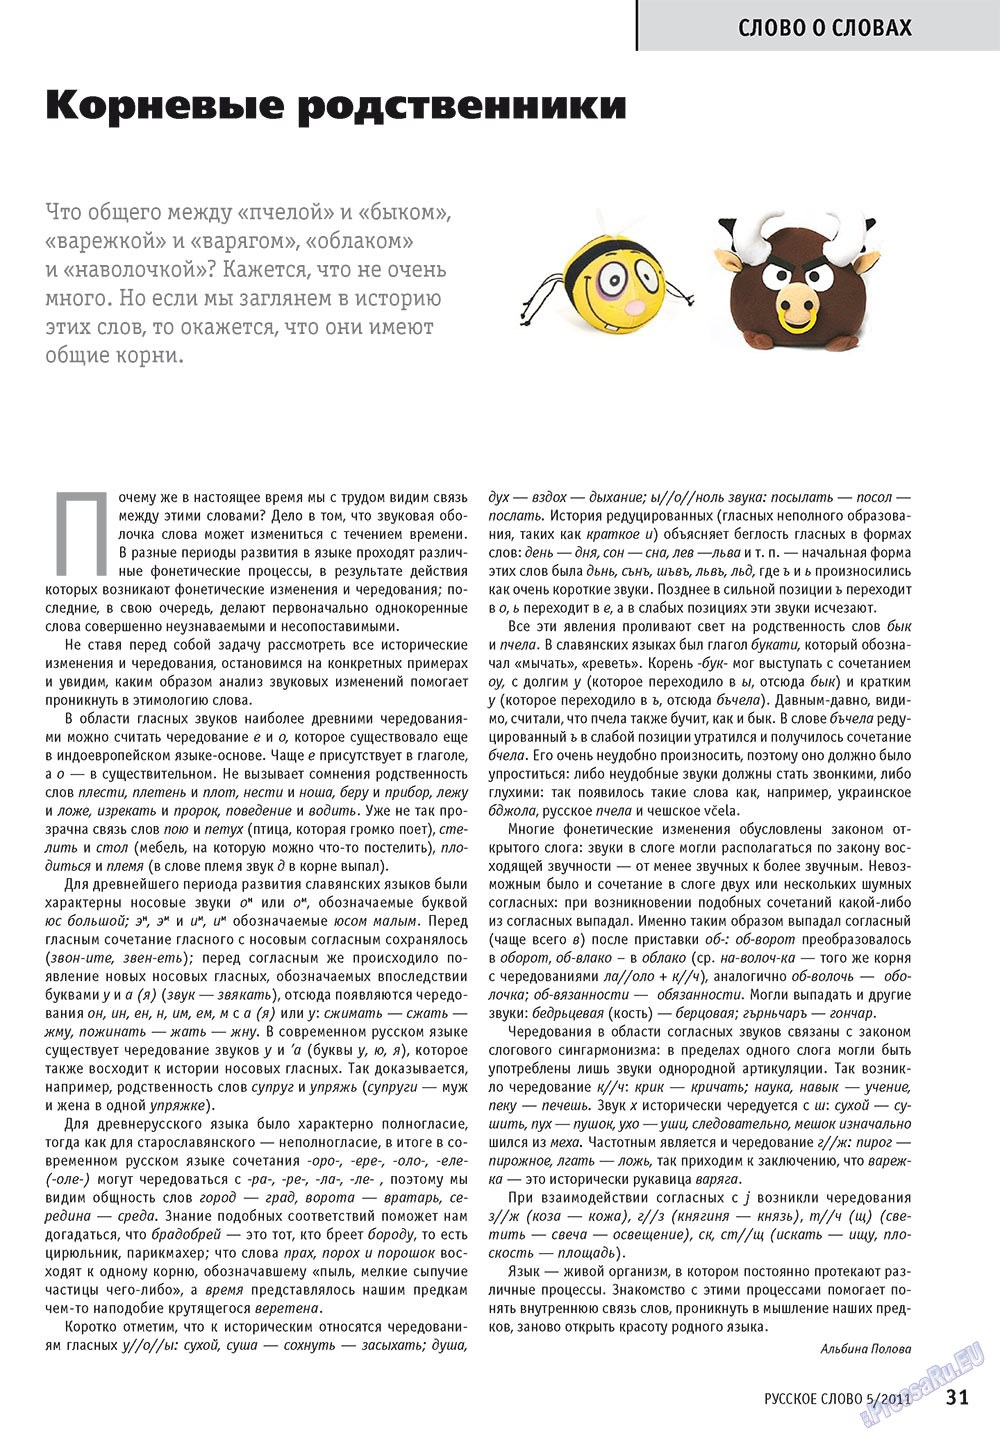 Русское слово (журнал). 2011 год, номер 5, стр. 33